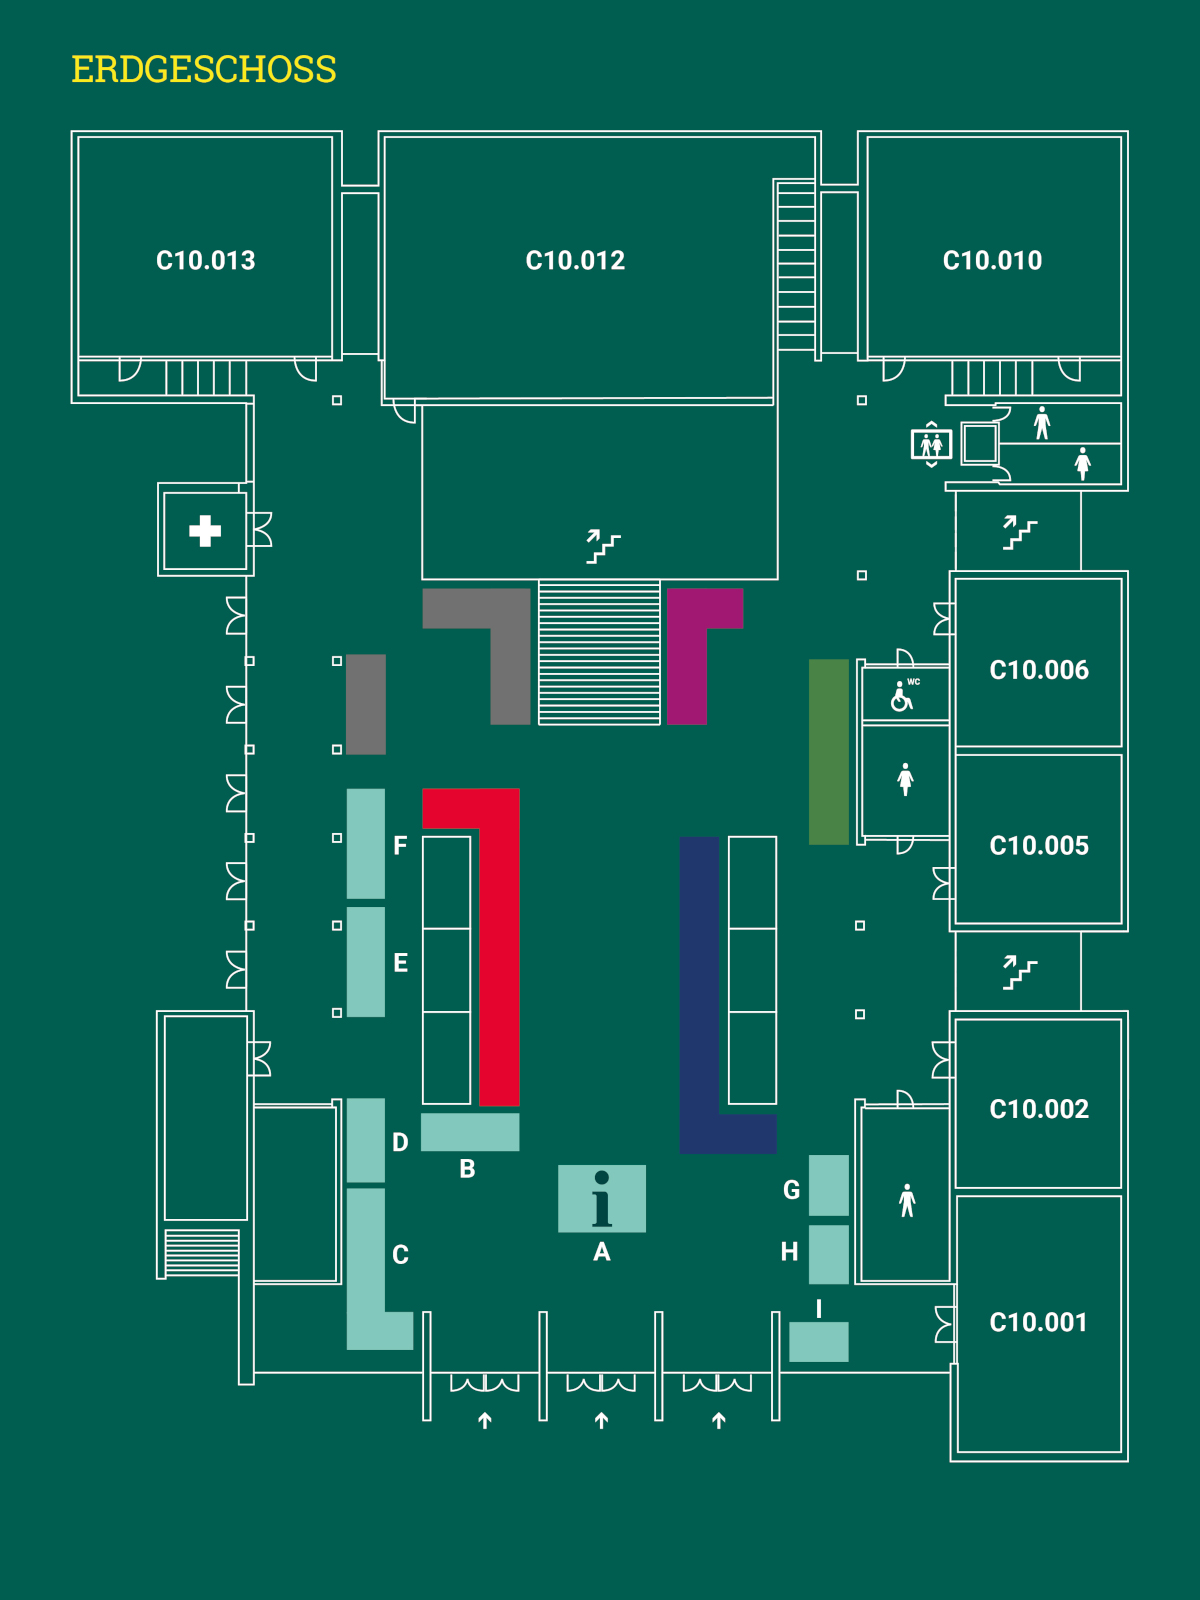 Eine 2D-Karte des Erdgeschoss des Veranstaltungsgebäude zum Tag der offenen Tür in der Reichenhainer Straße 90 mit Lage der Vortragsräume C10.001 bis C10.013